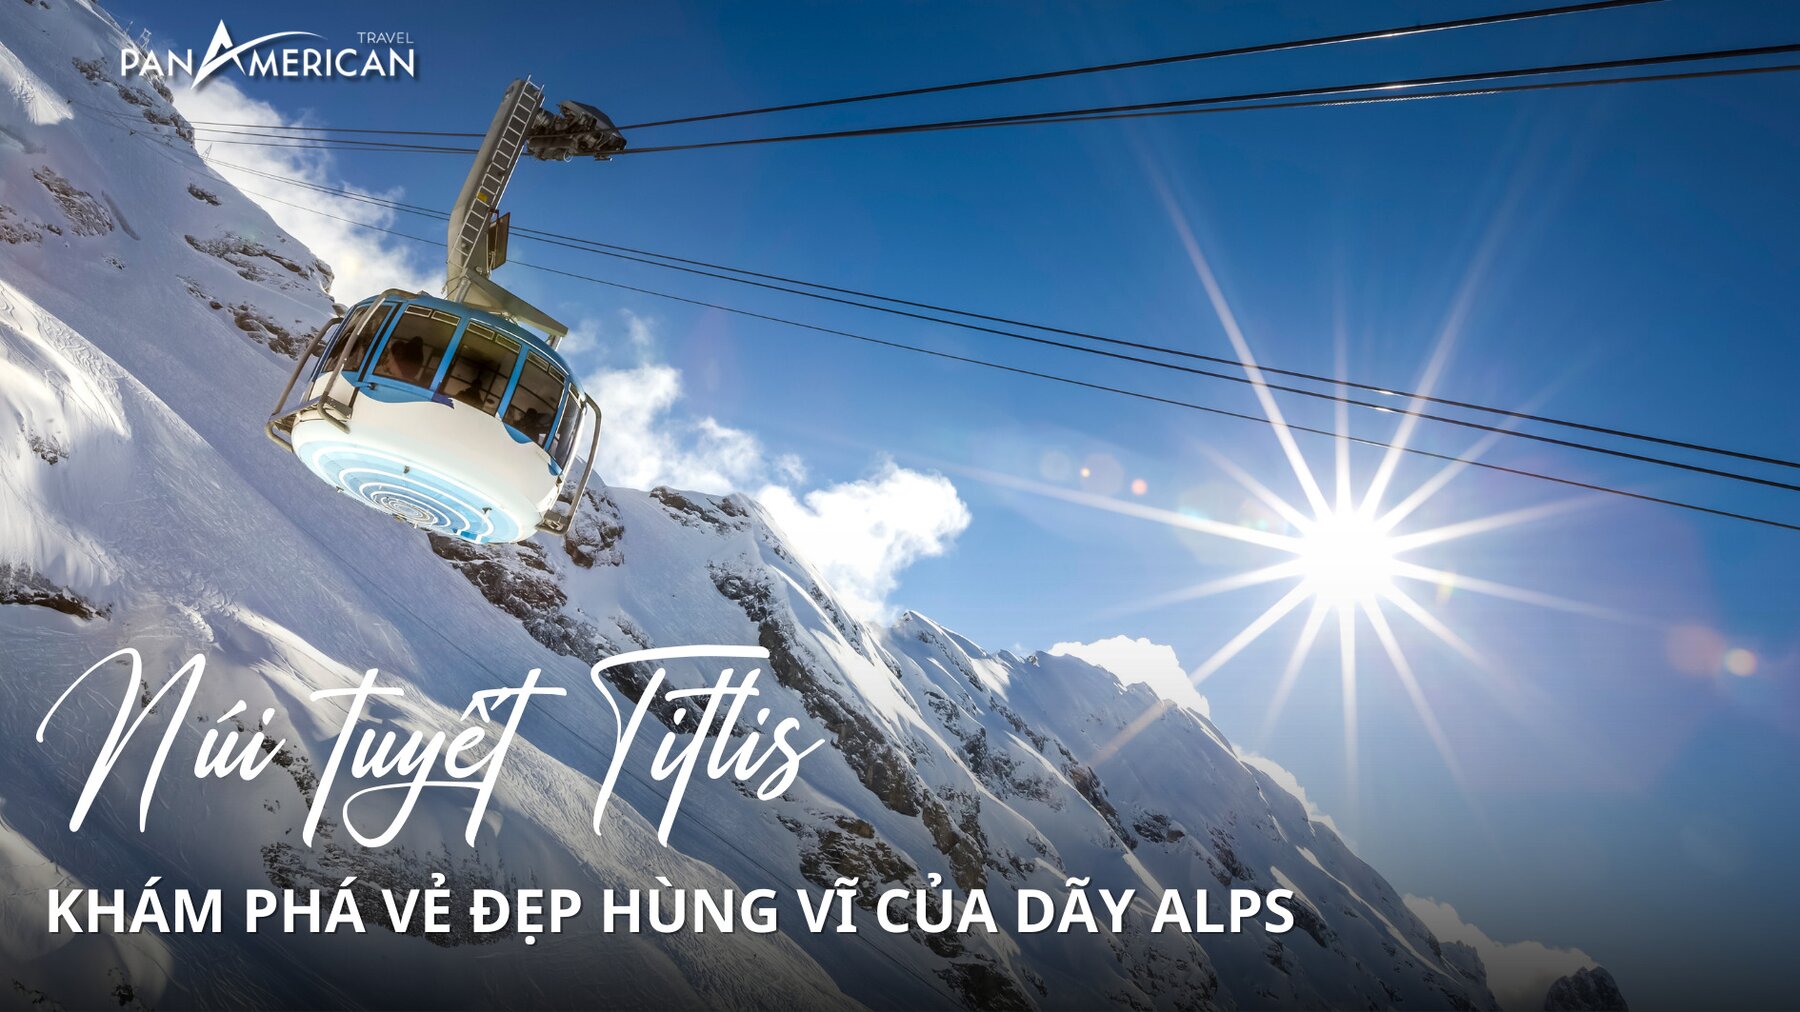 Khám phá núi tuyết Titlis - Vẻ đẹp hùng vĩ của dãy Alps